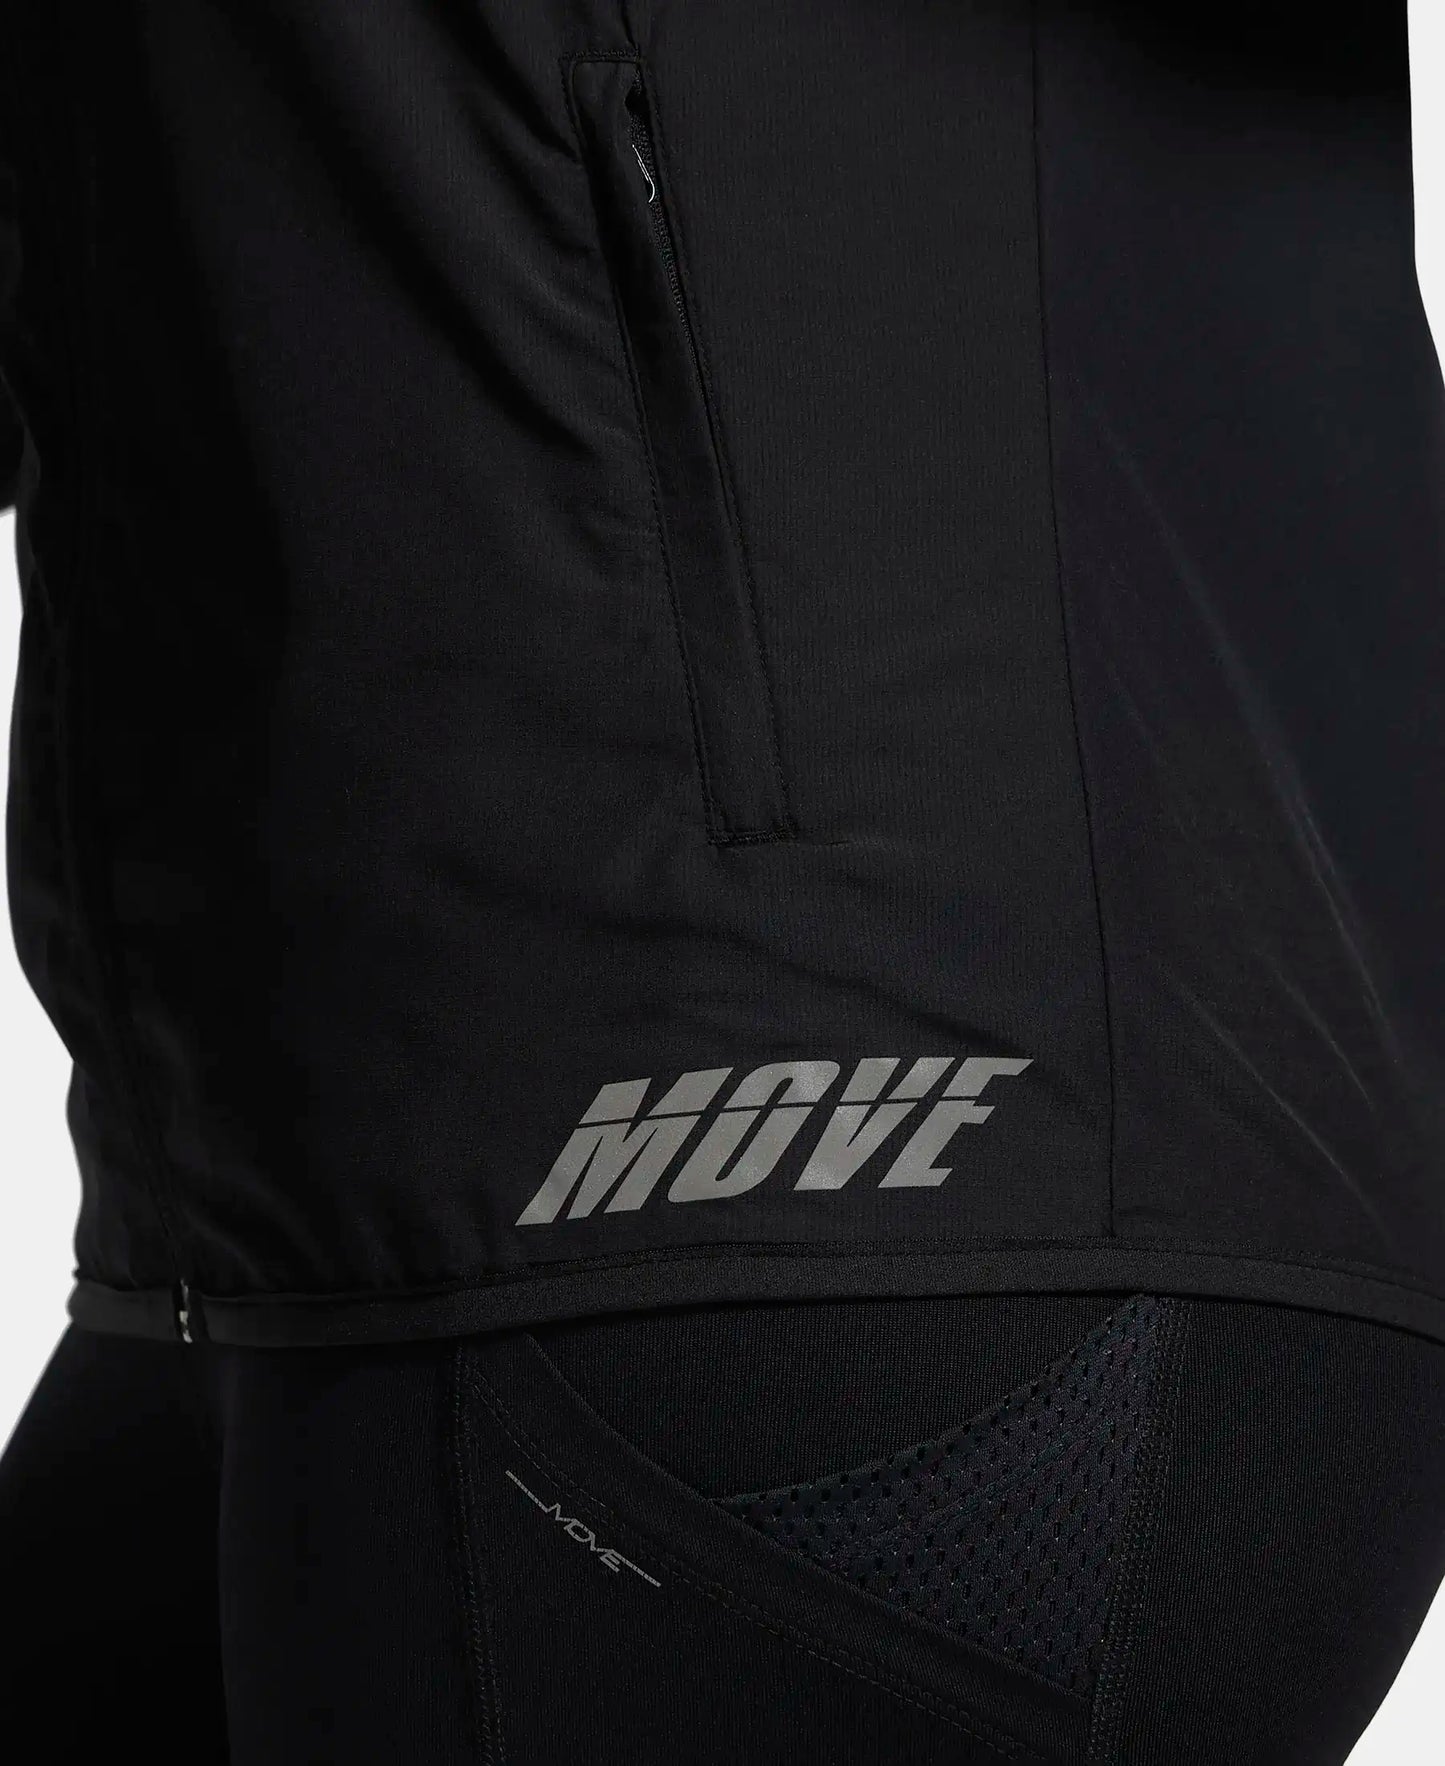 Microfiber Fabric Relaxed Fit Raglan Styled Water Resistant Hoodie Jacket - Black-7